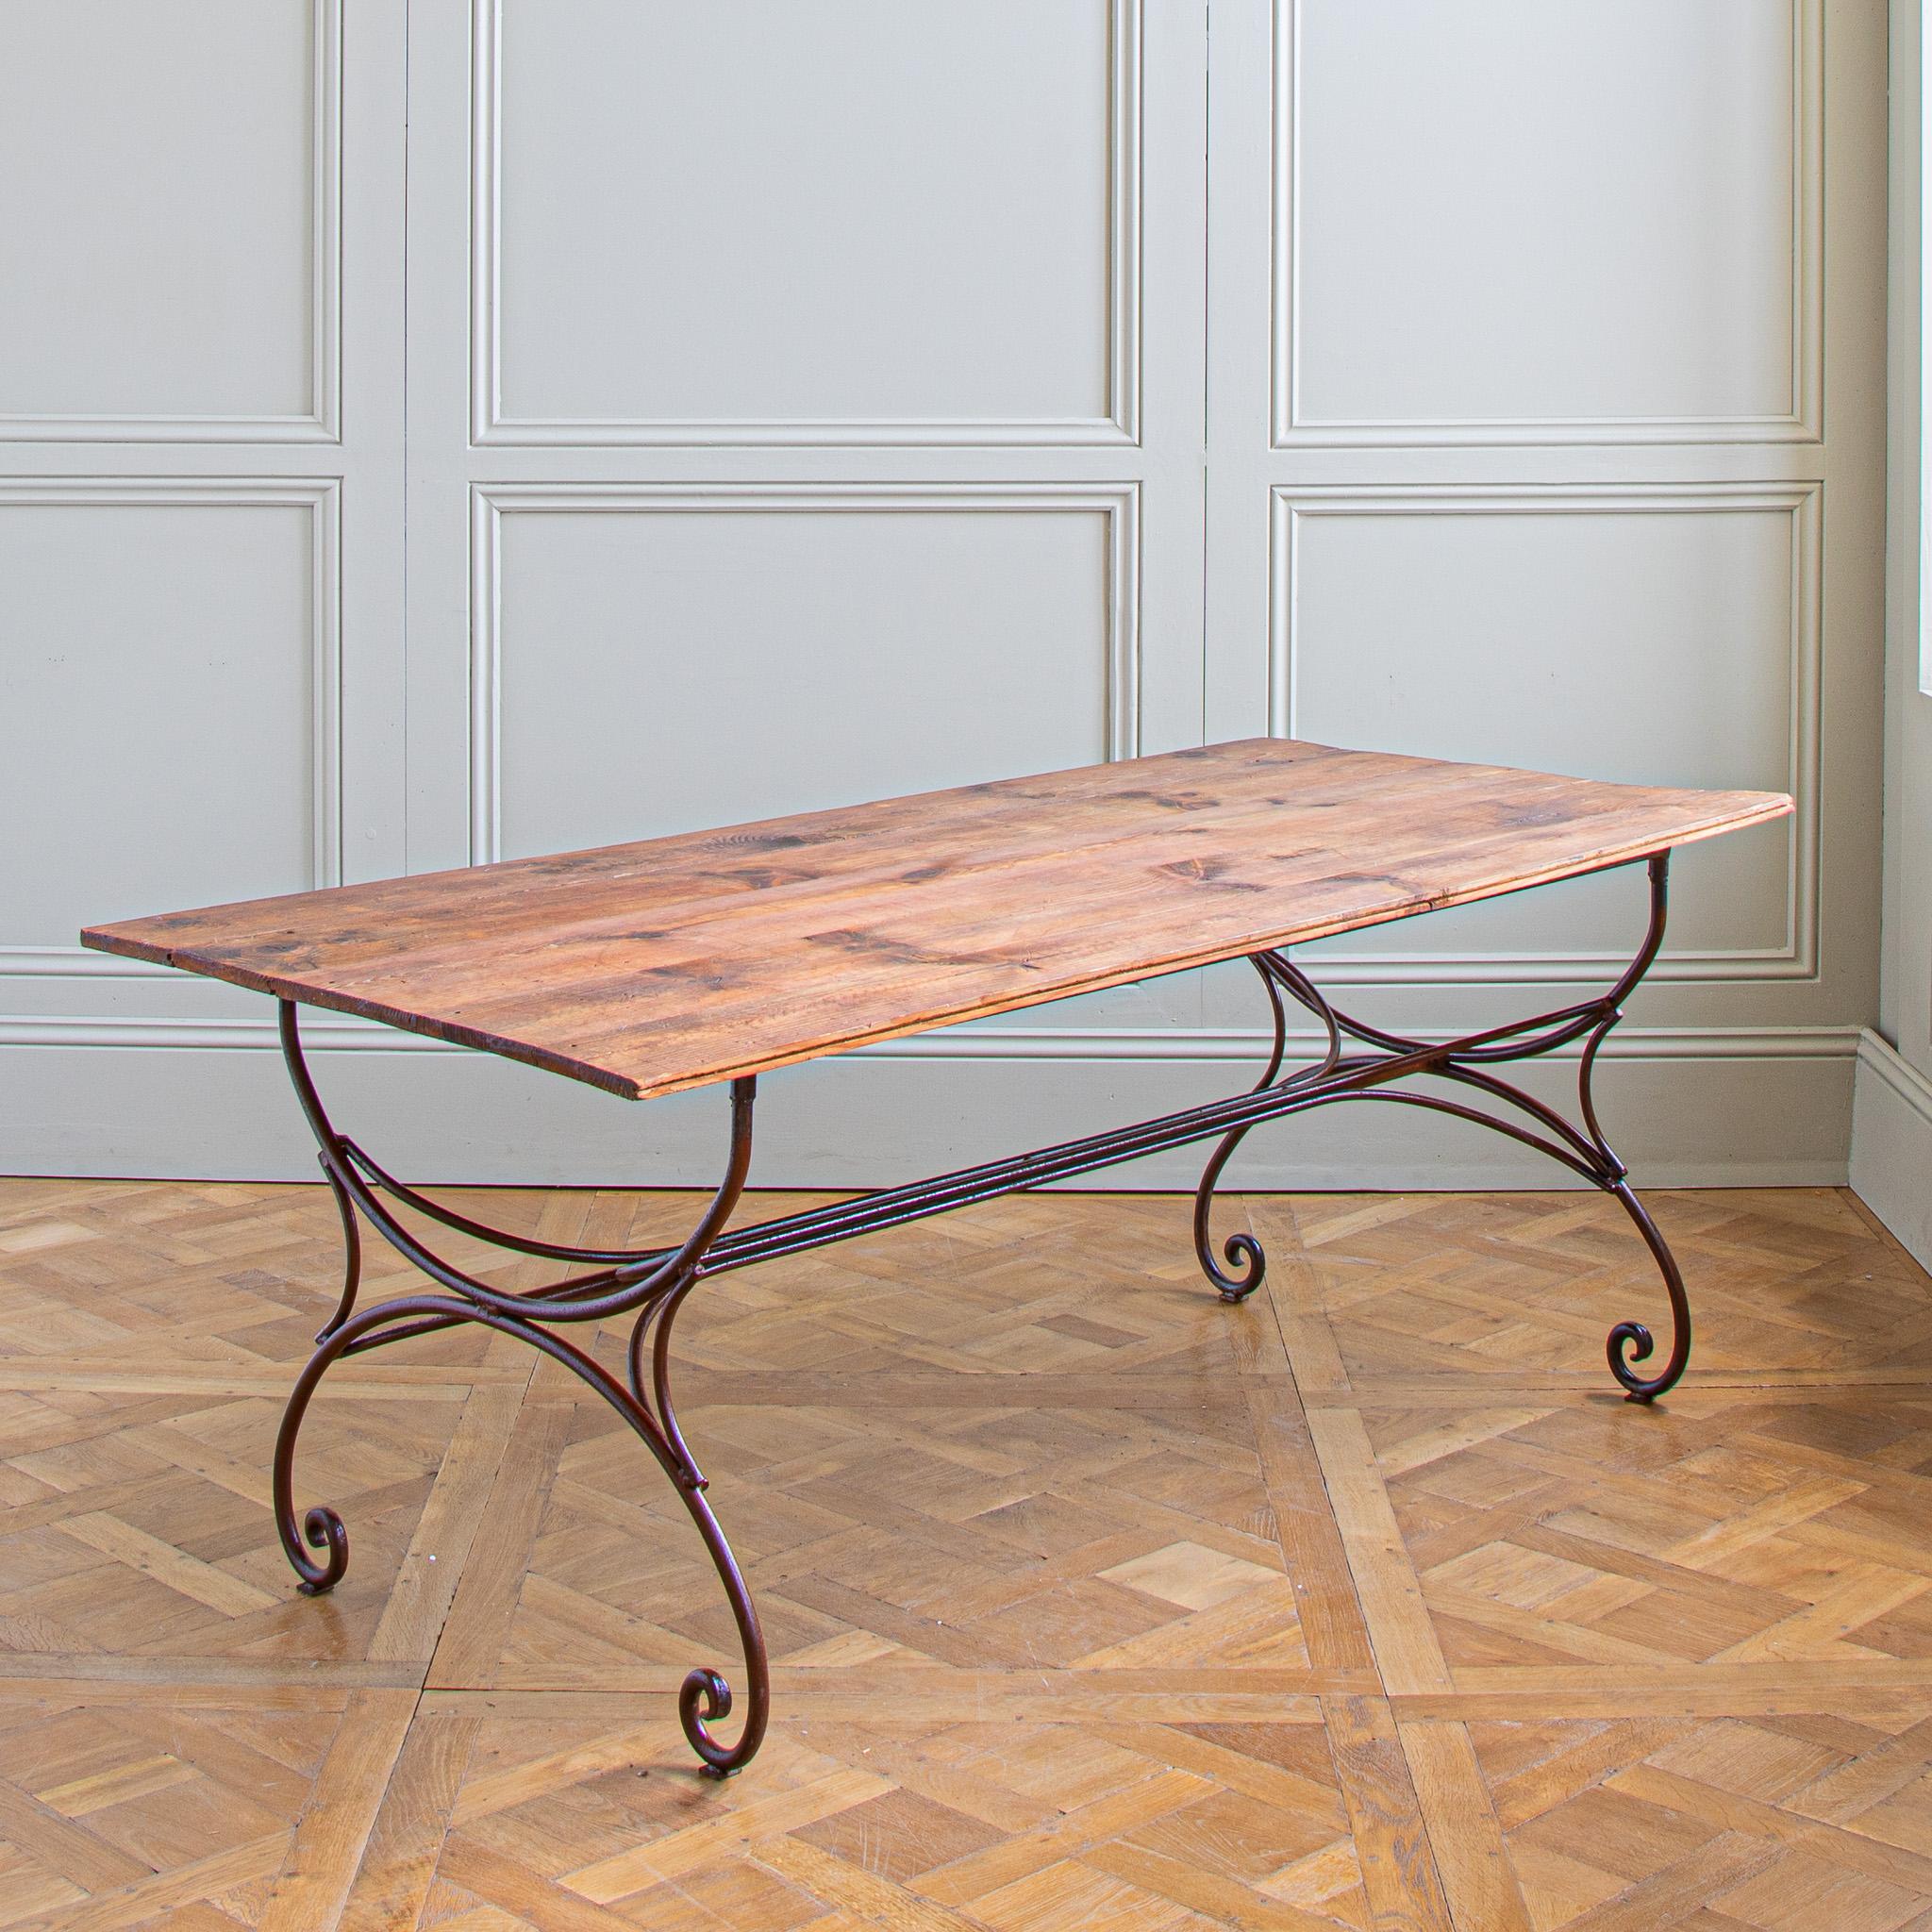 Une grande table rustique du sud de la France, datant du milieu du siècle dernier, qui peut être utilisée à l'intérieur ou à l'extérieur. La base en fer forgé présente une teinte rougeâtre profonde, oxydée par l'âge, qui a été polie et scellée pour